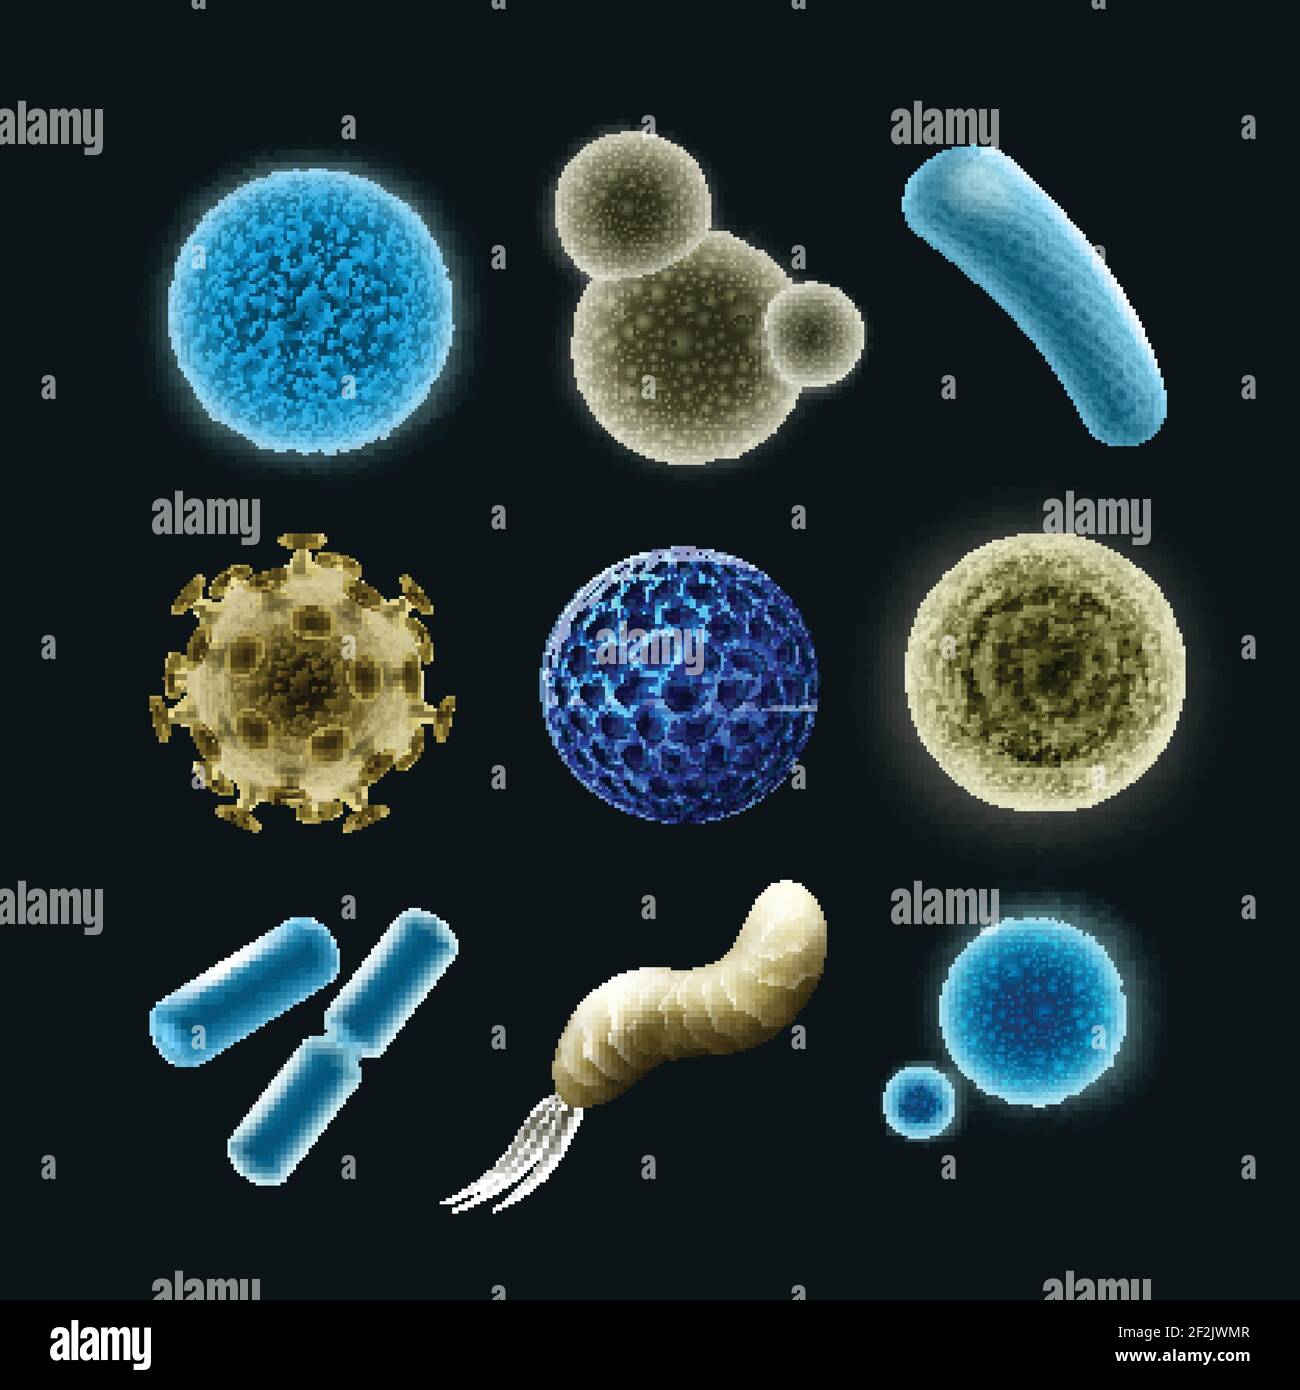 Ensemble de vecteurs de différentes bactéries et cellules virales cocci, spirilla, bacilles, diplobacilles isolées sur fond sombre Illustration de Vecteur